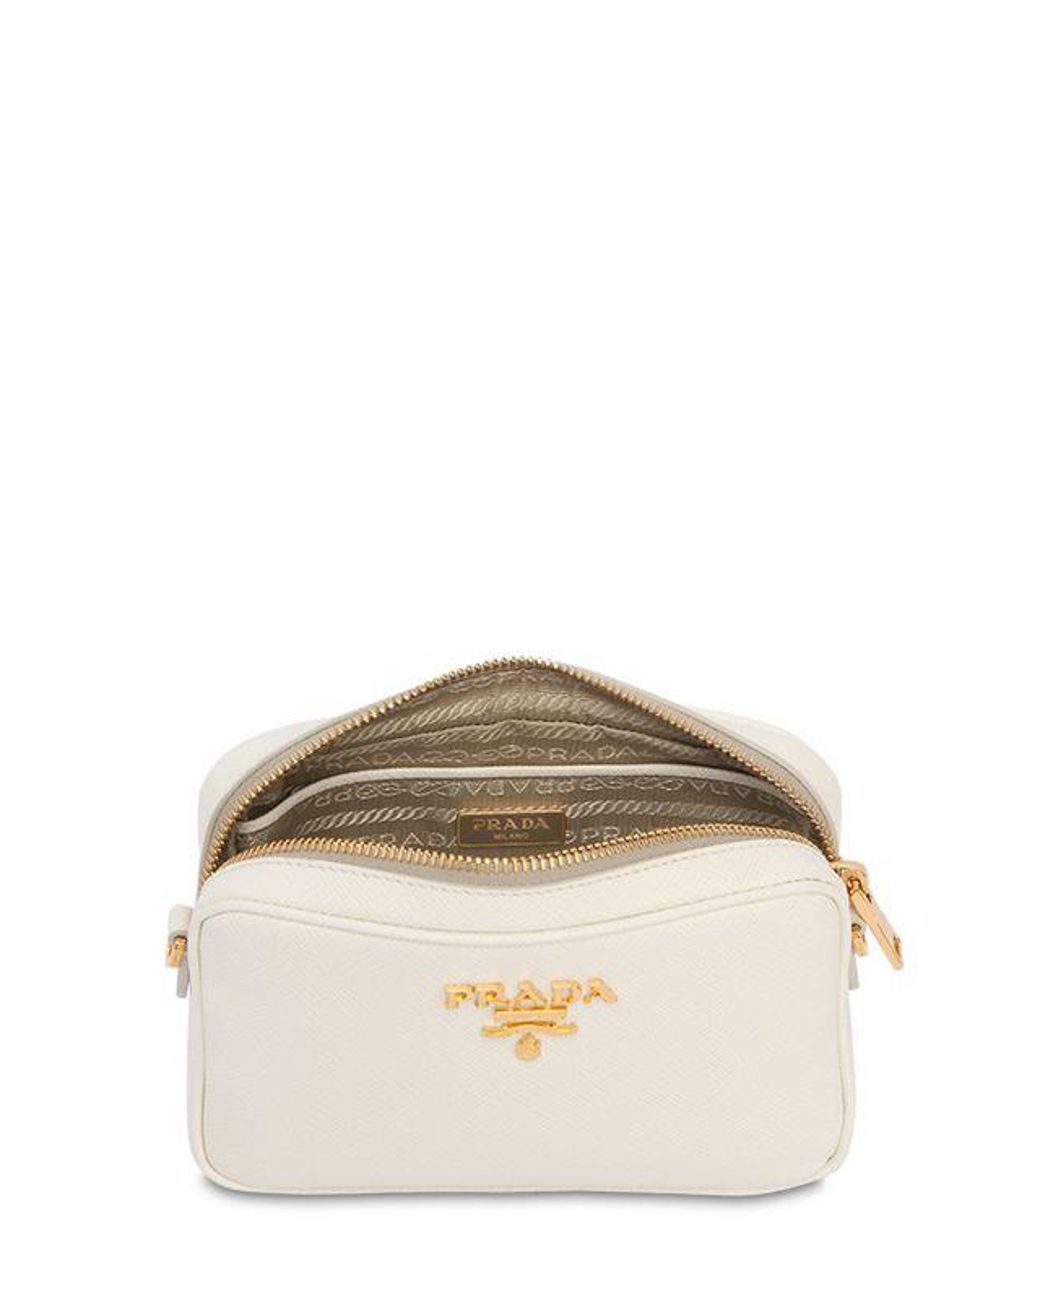 Prada Saffiano Leather Camera Bag in White